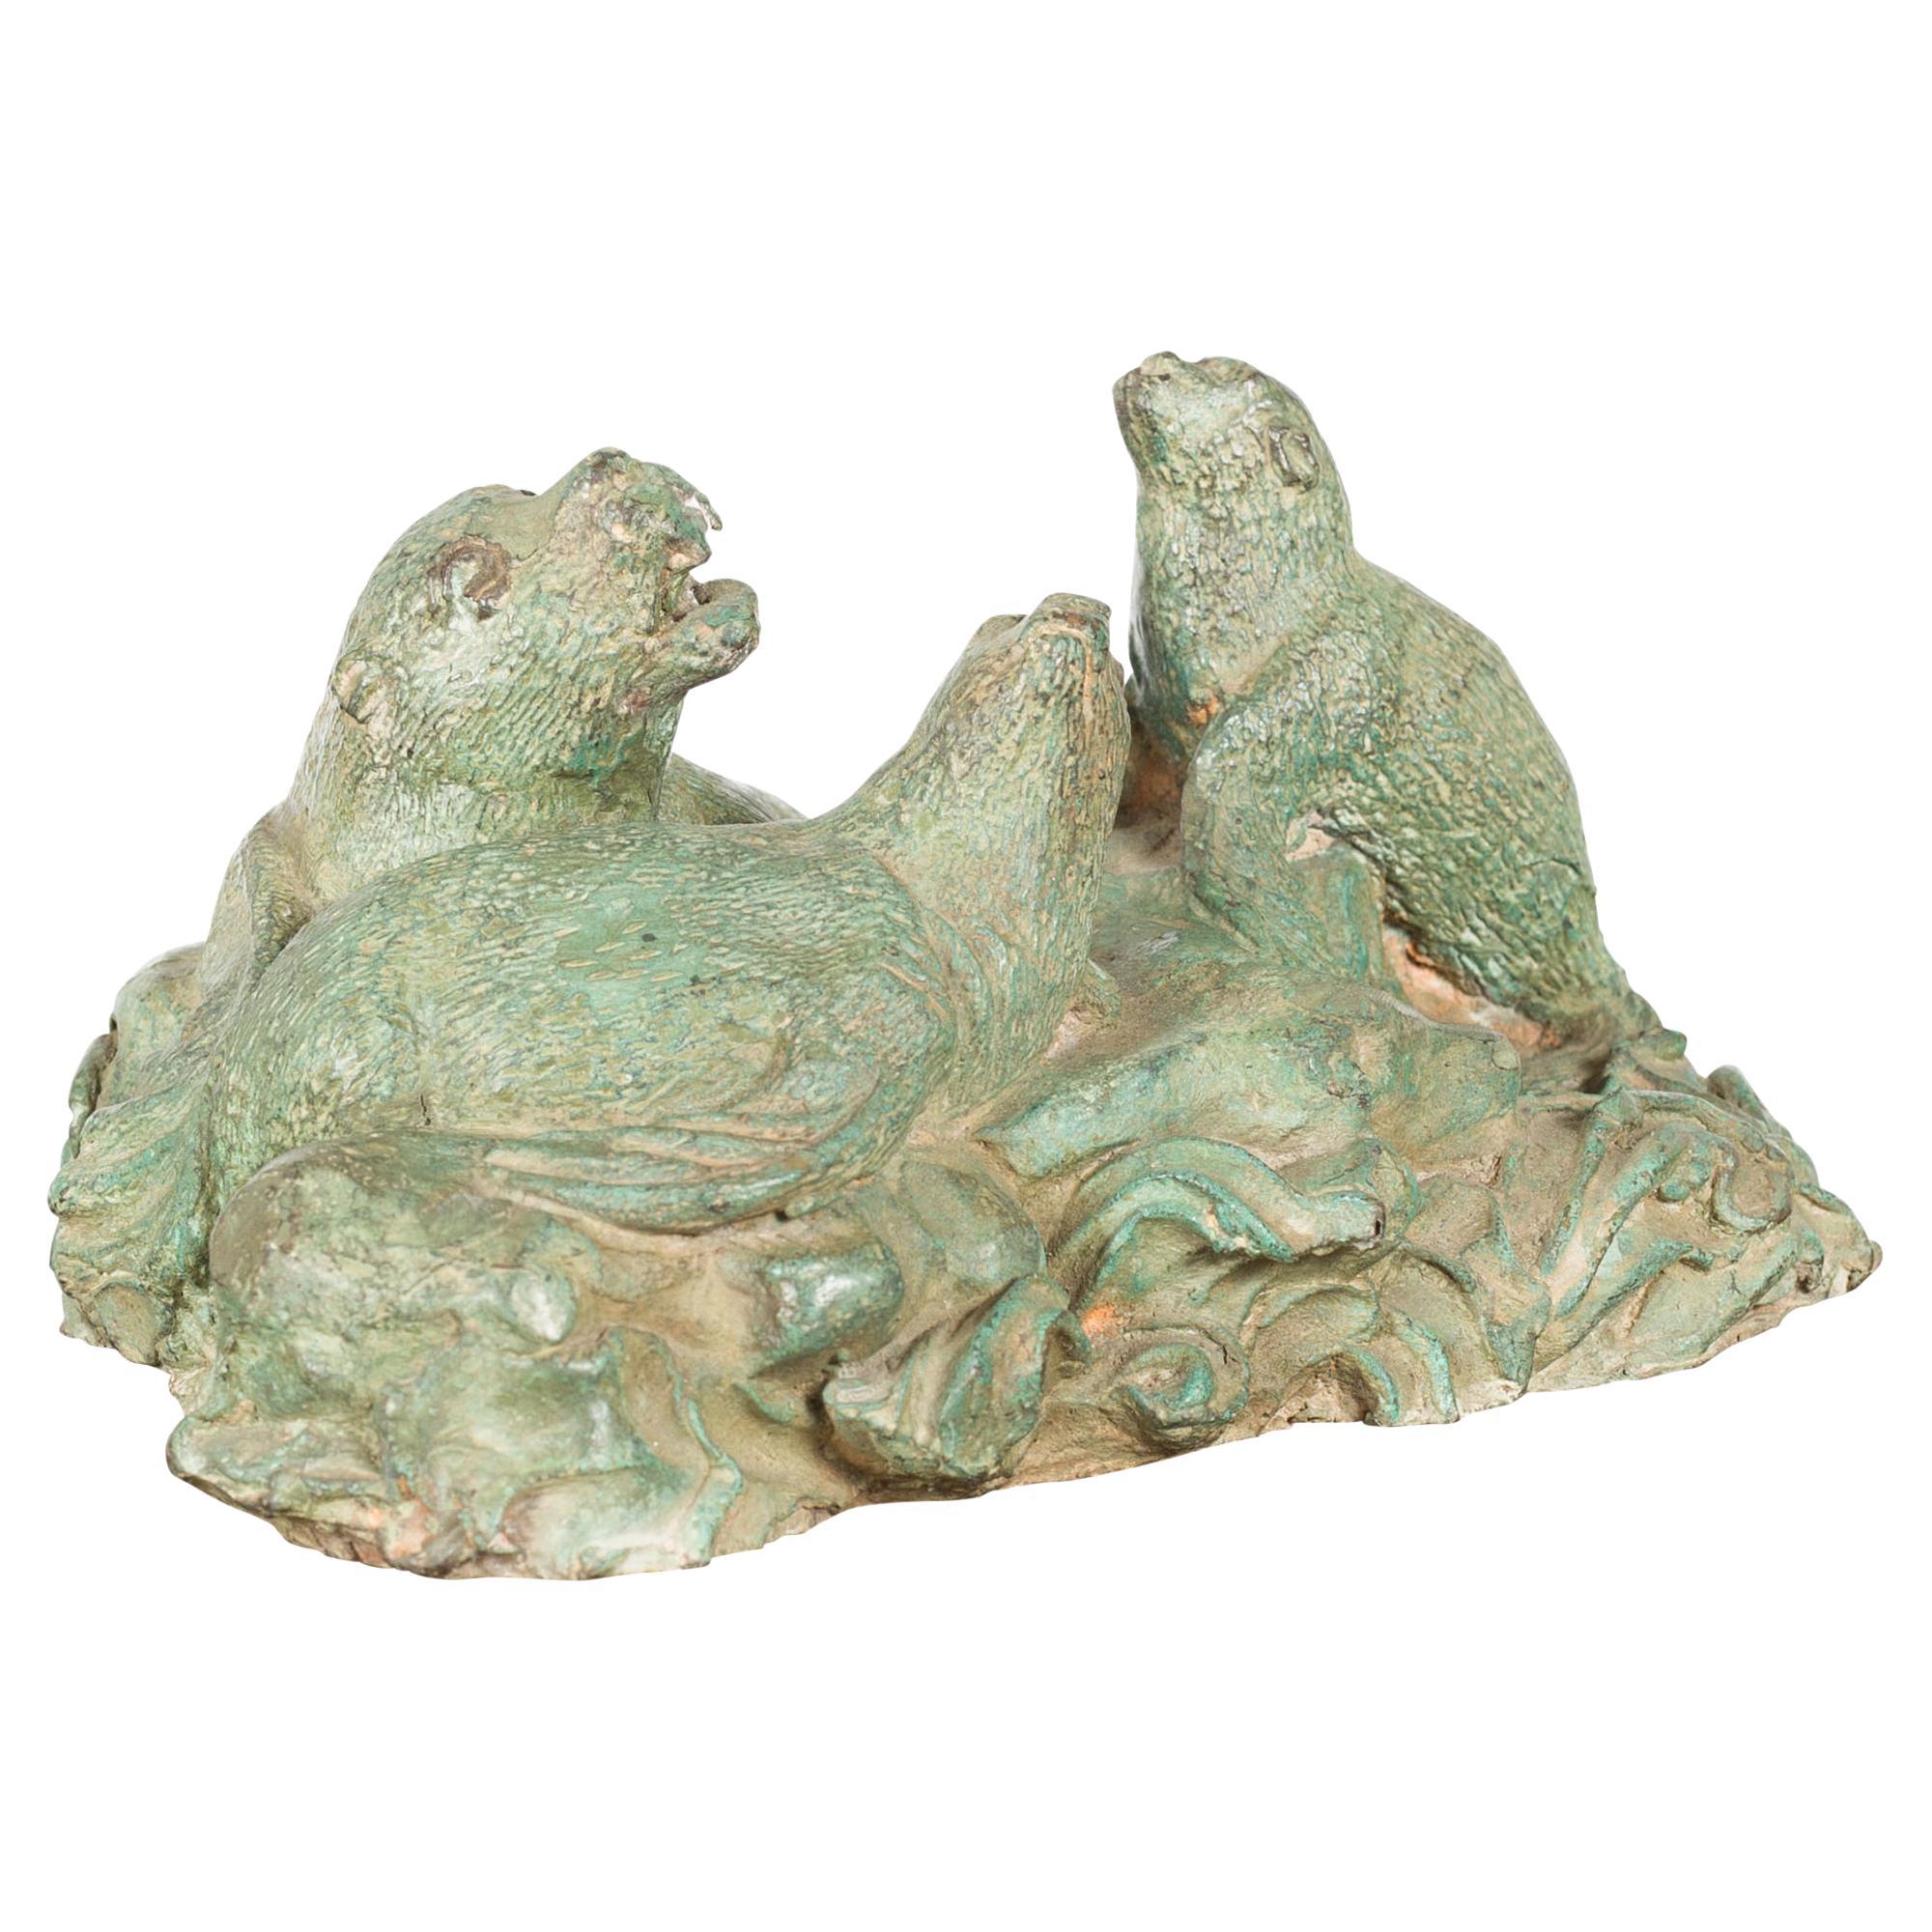 Groupe contemporain de lion de mer sculpté en bronze moulé à la cire perdue avec patine vert-de-gris